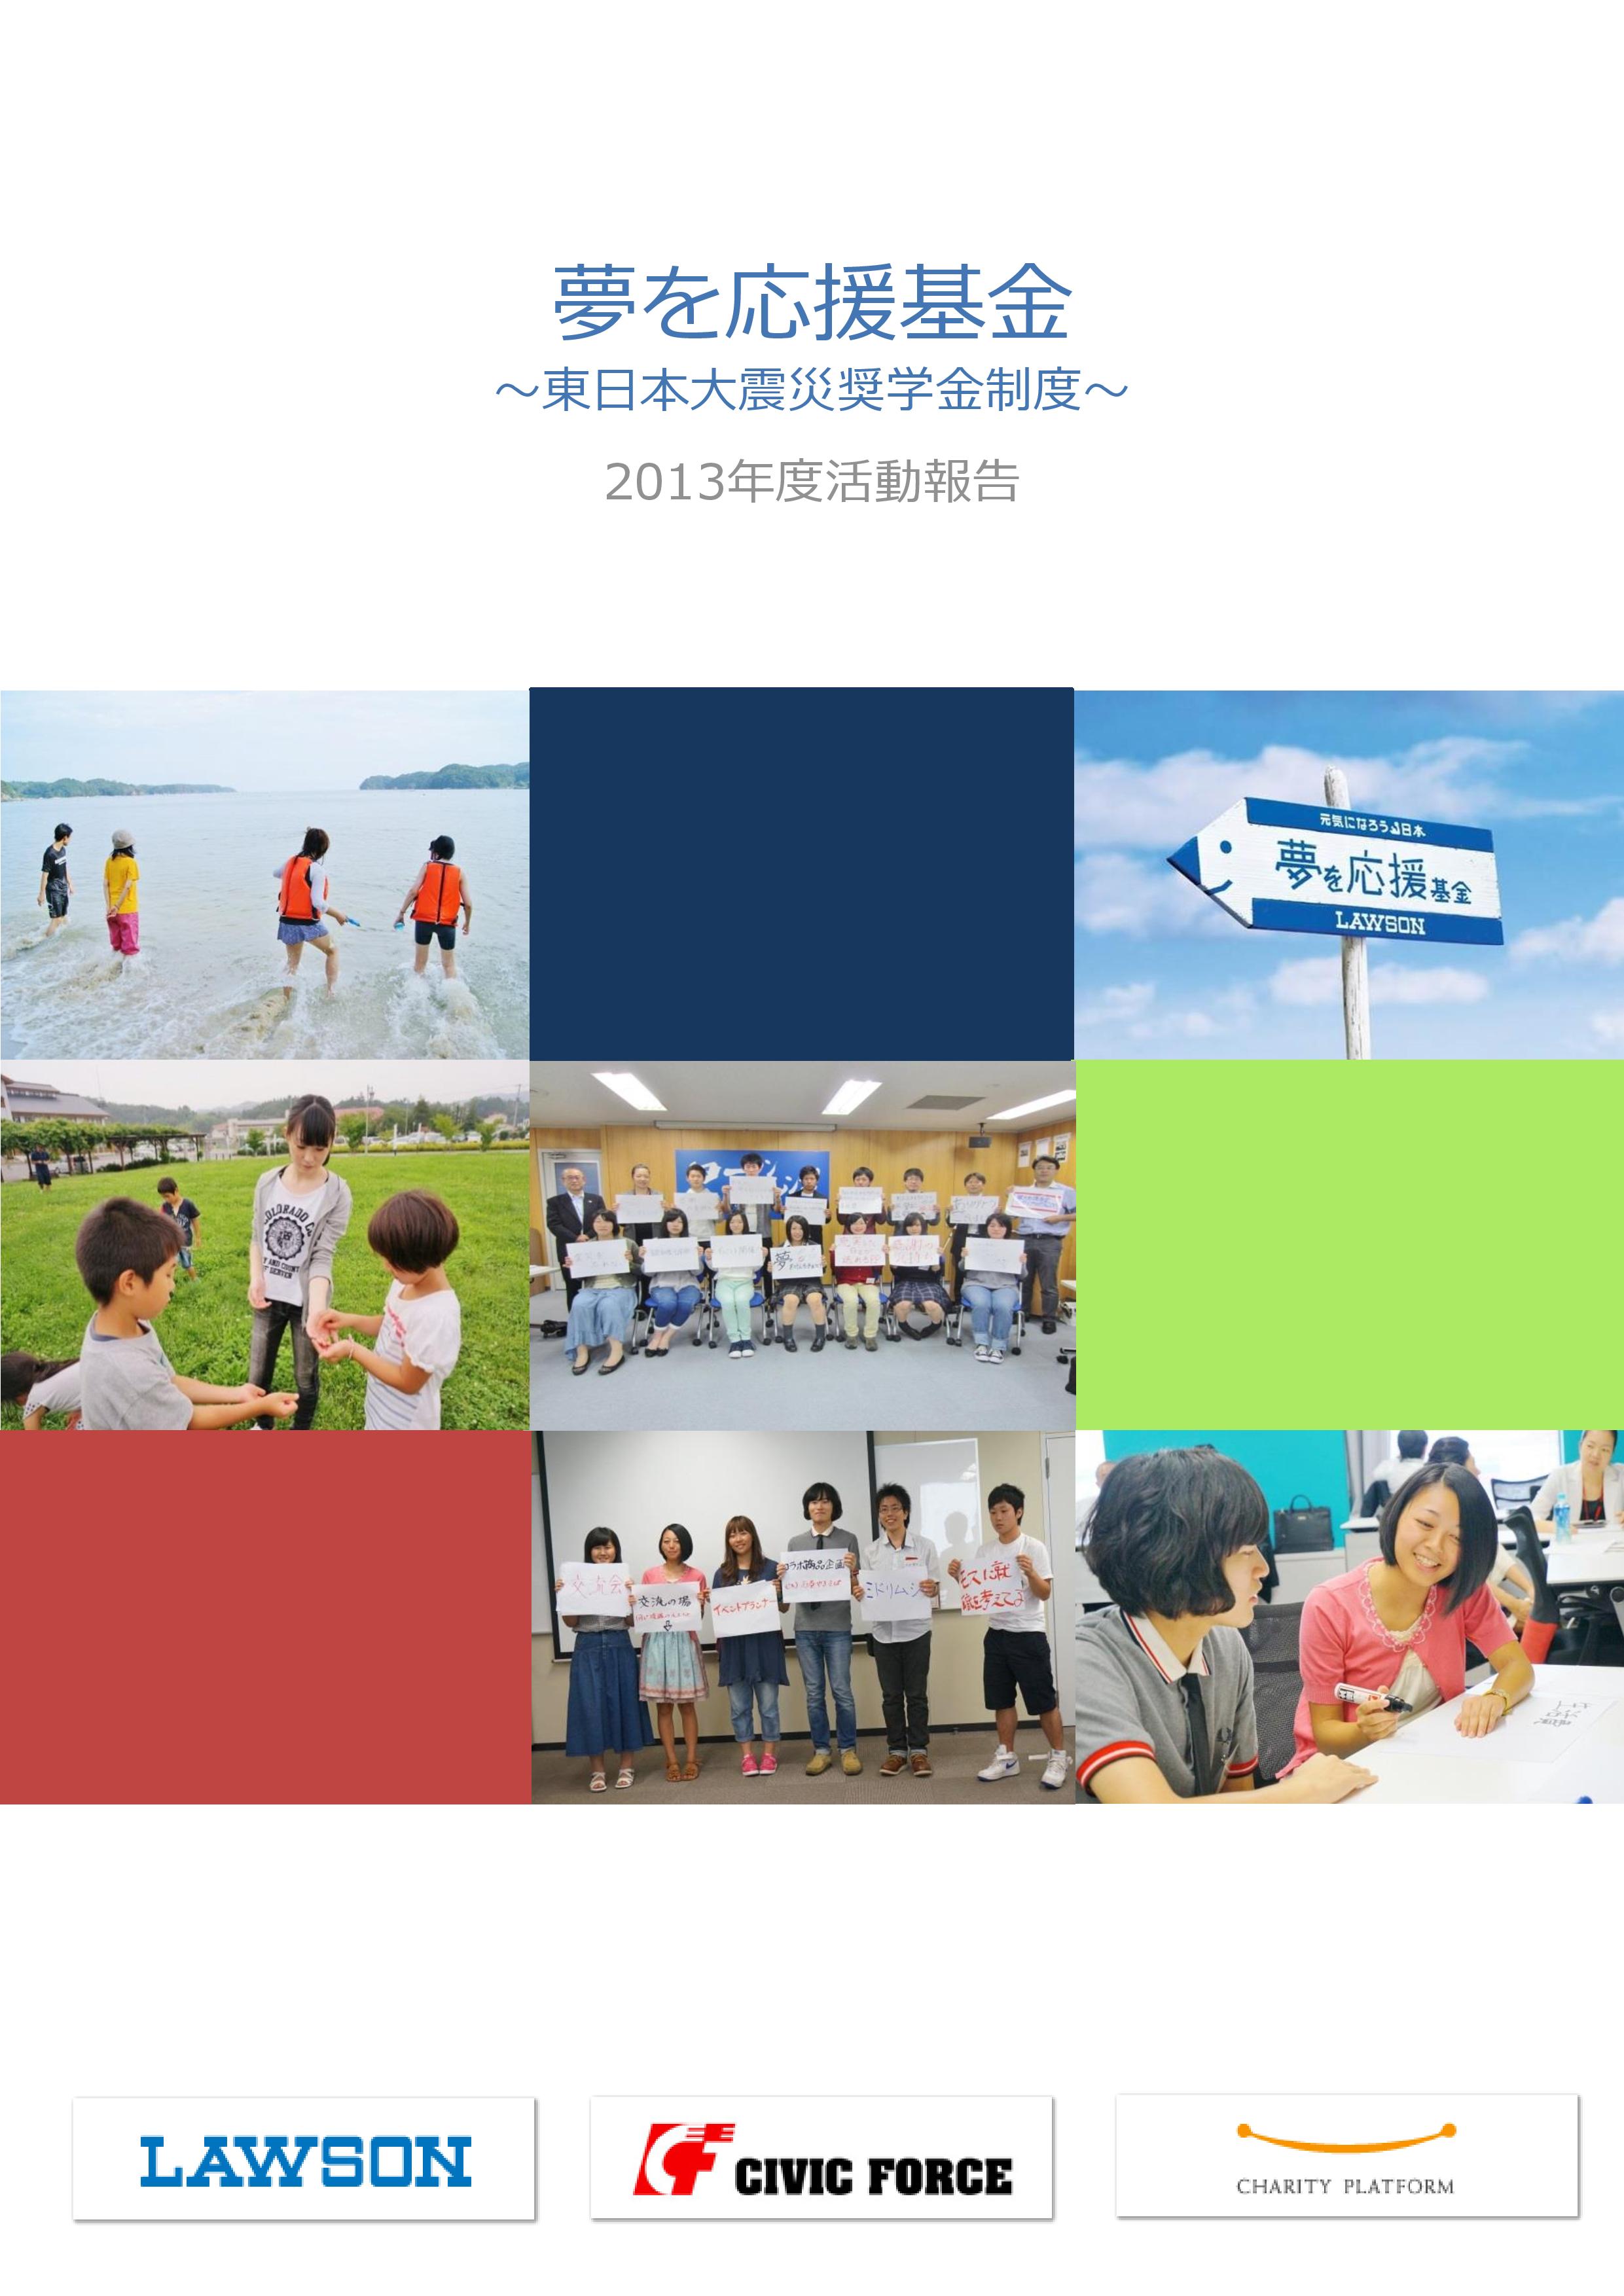 2013年度活動報告(案)-page-001.jpg